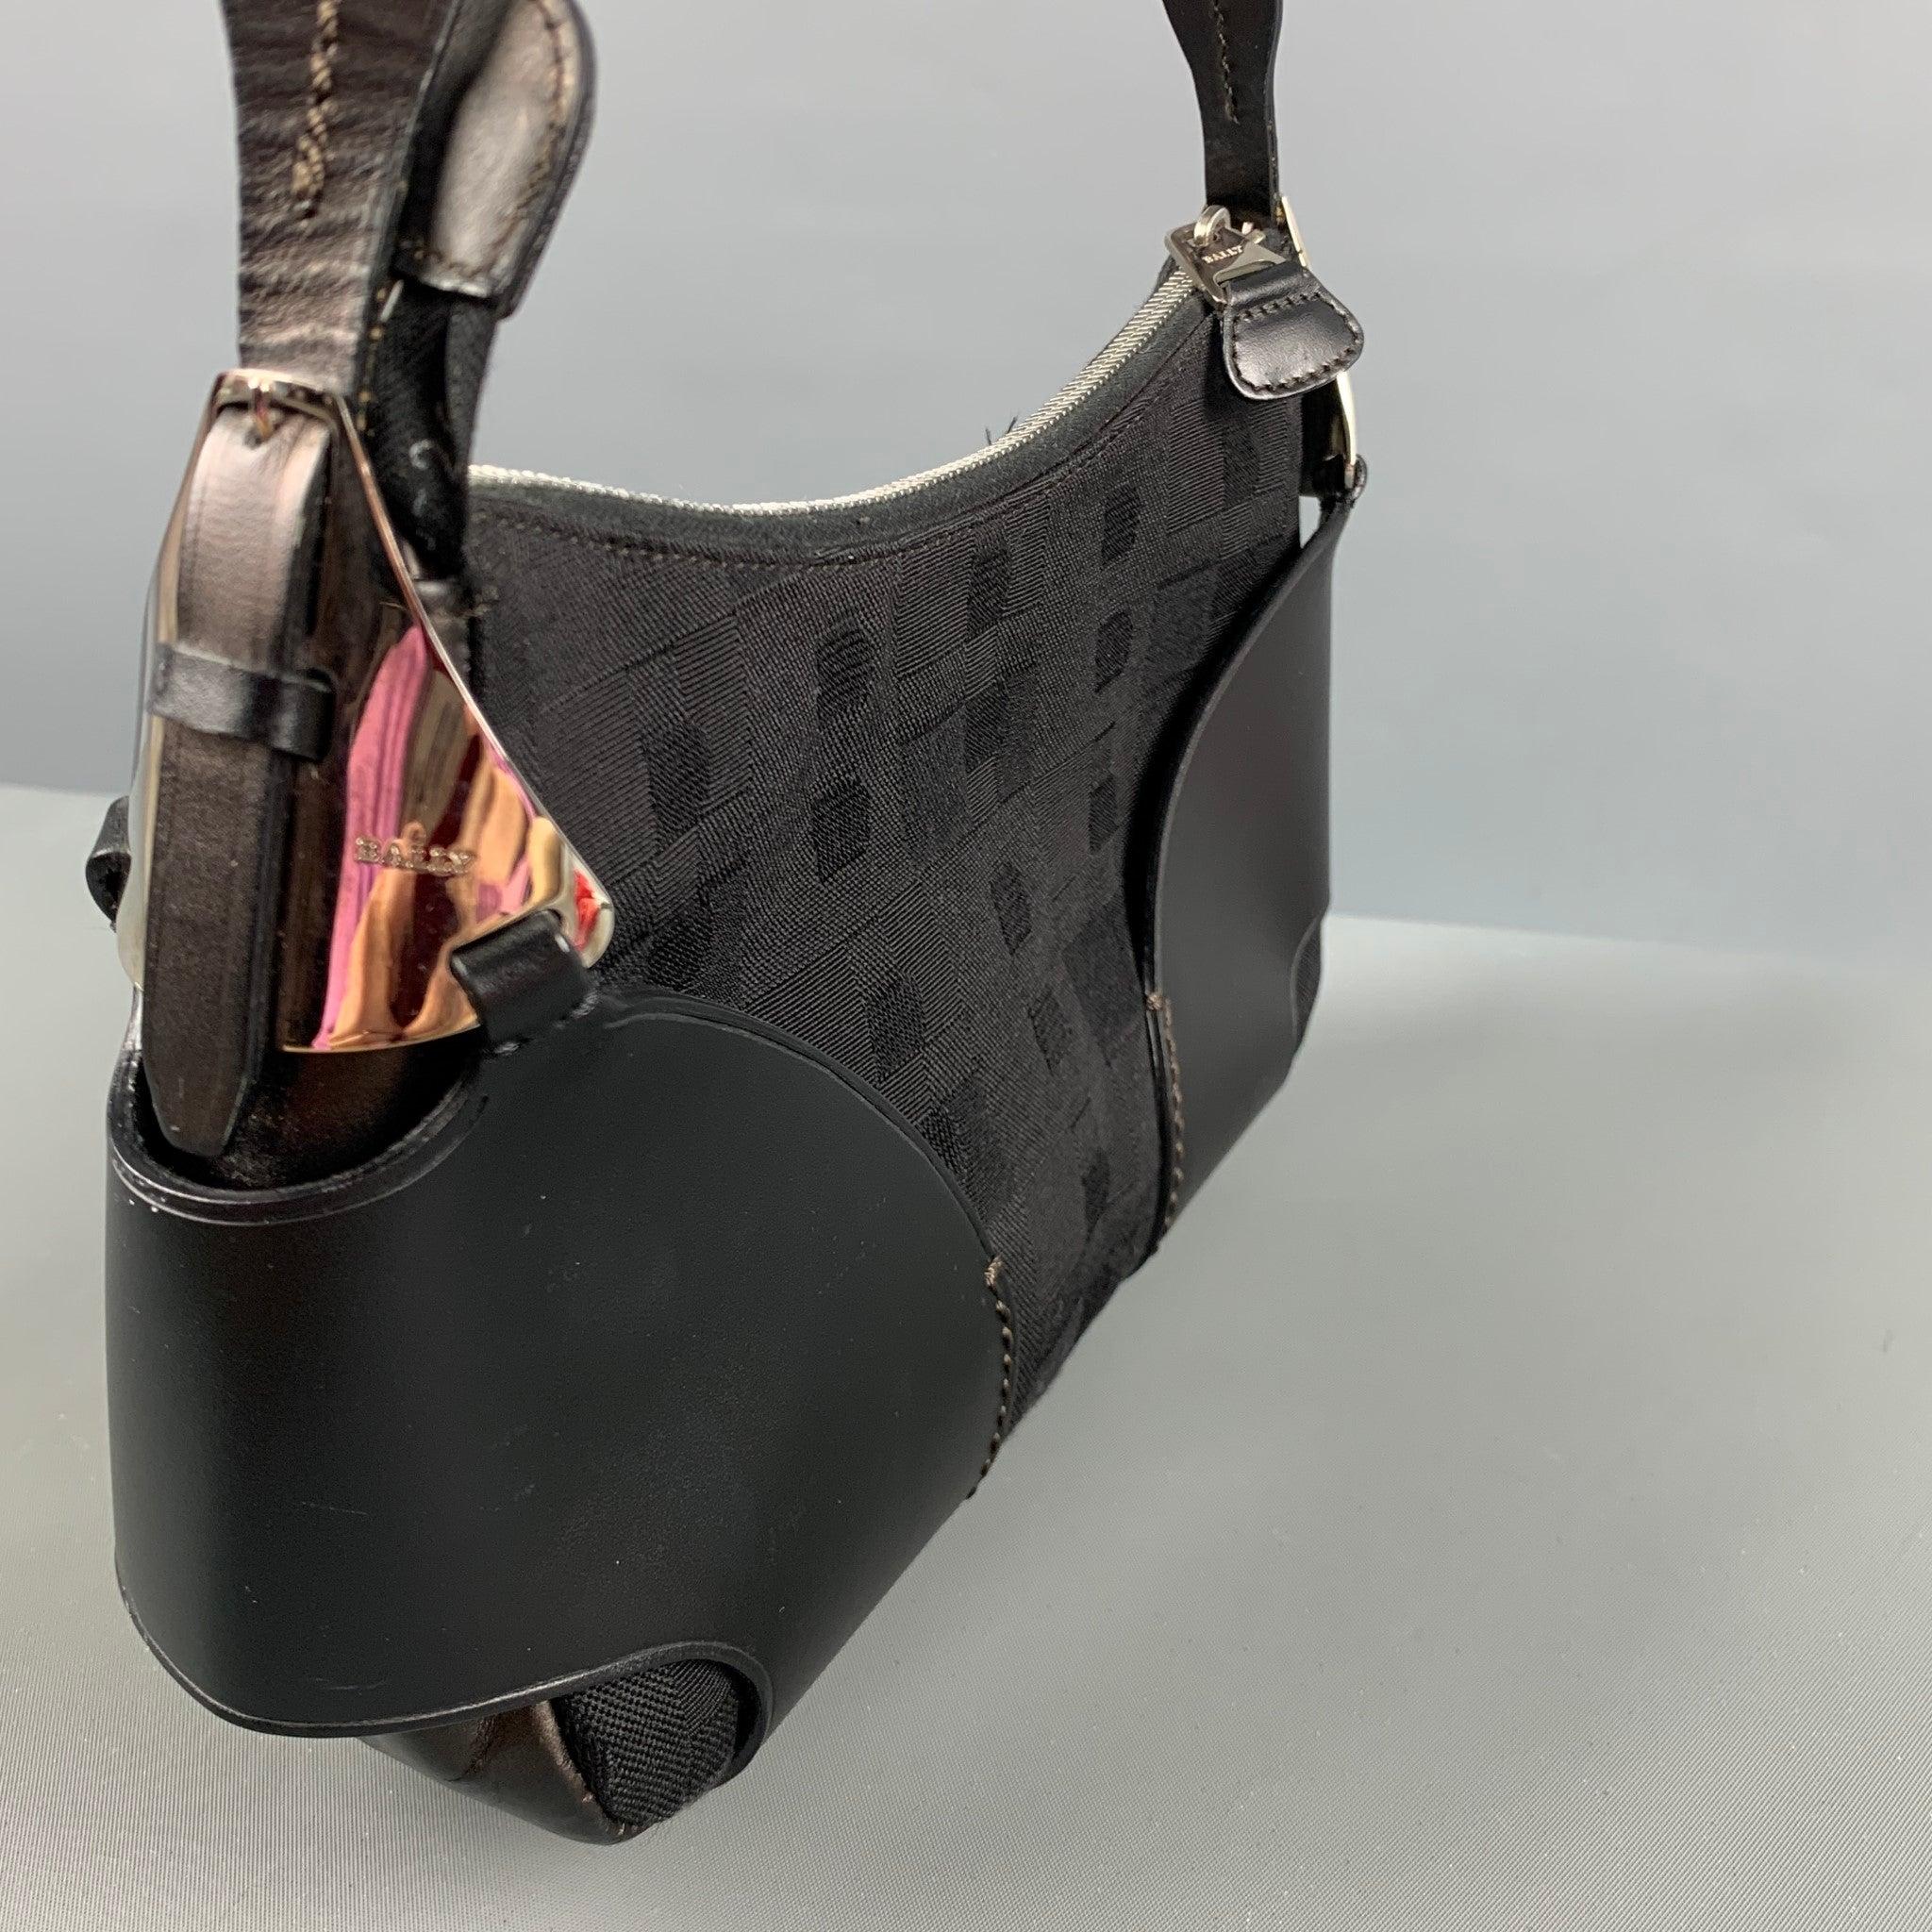 BALLY Vintage Tasche aus schwarzem MATERIAL mit Monogrammen, schwarzen Lederakzenten, Innentasche und Reißverschluss. Made in Italy. sehr guter gebrauchter Zustand. Mäßige Abnutzungserscheinungen an den Metallteilen. 

Markiert:   ACAG 